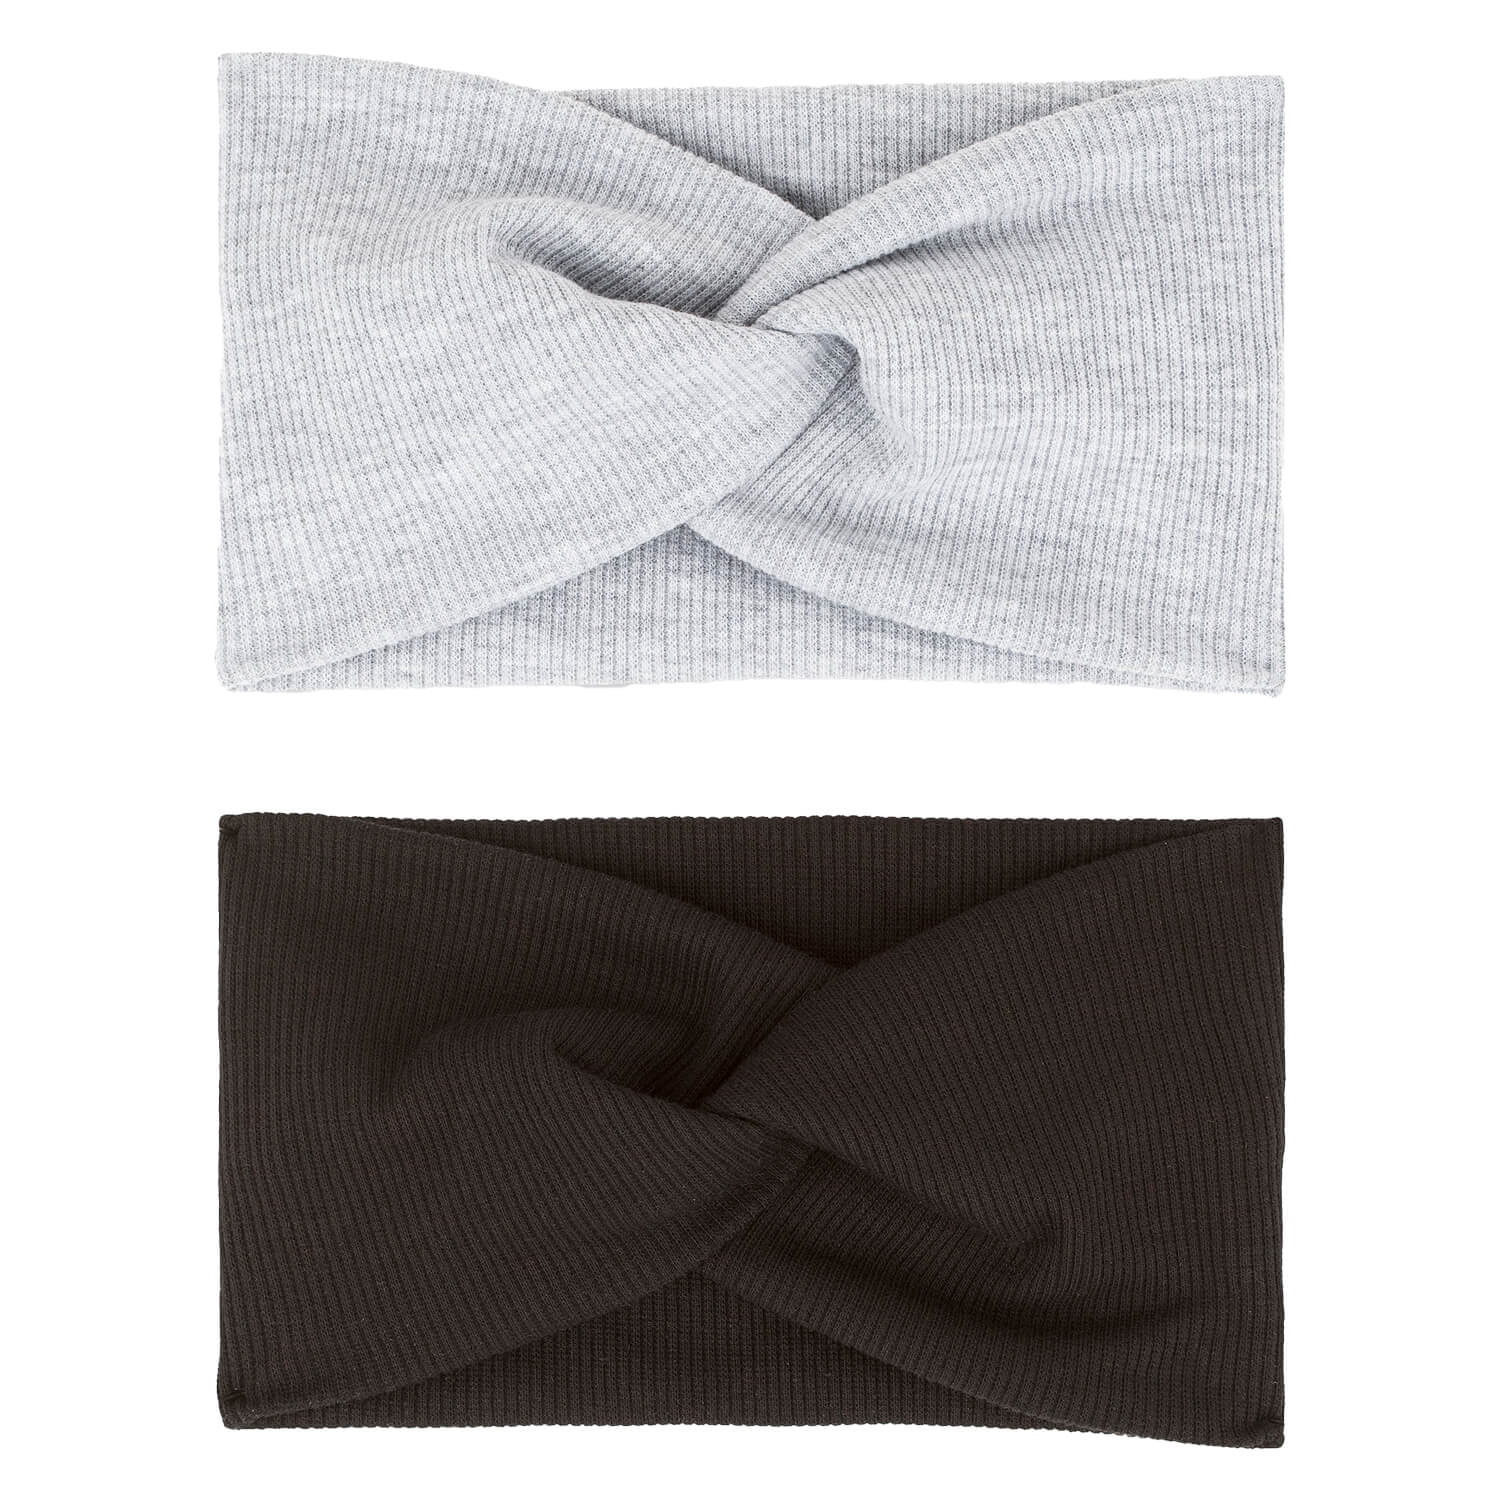 Produktbild von Haarband mit Knoten, schwarz & grau